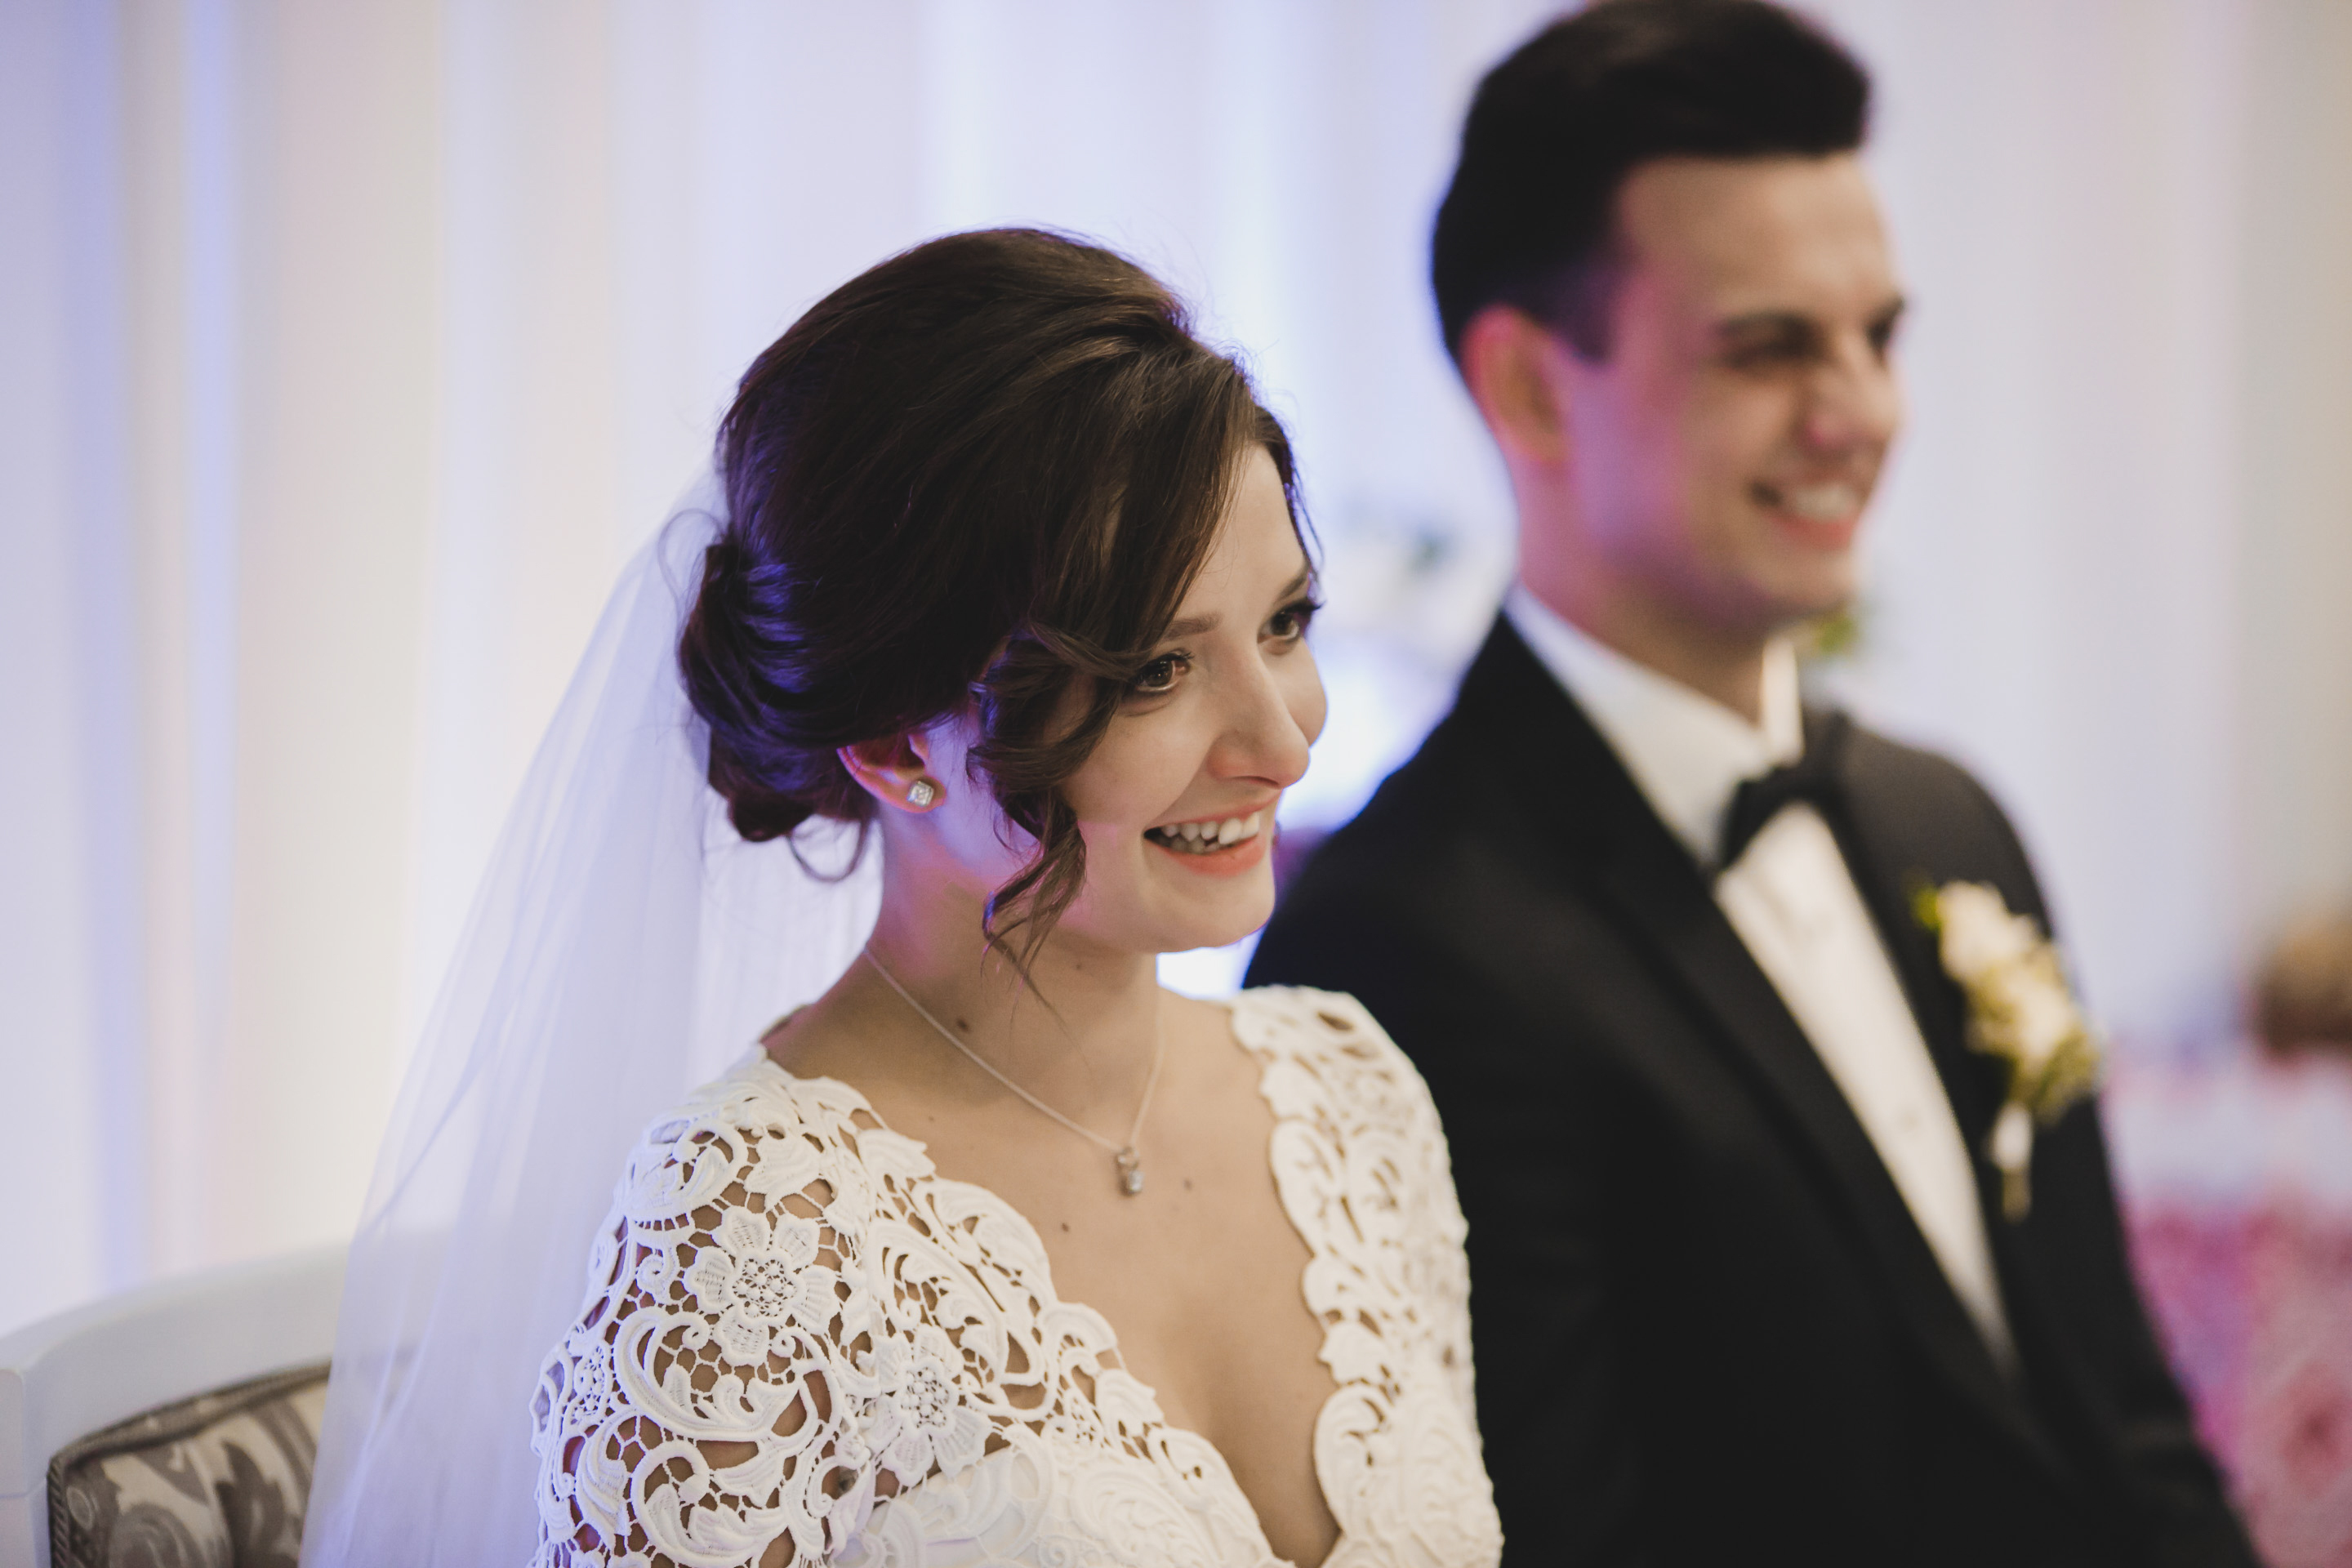 Ein Paar bei seiner Hochzeit | Quelle: Shutterstock